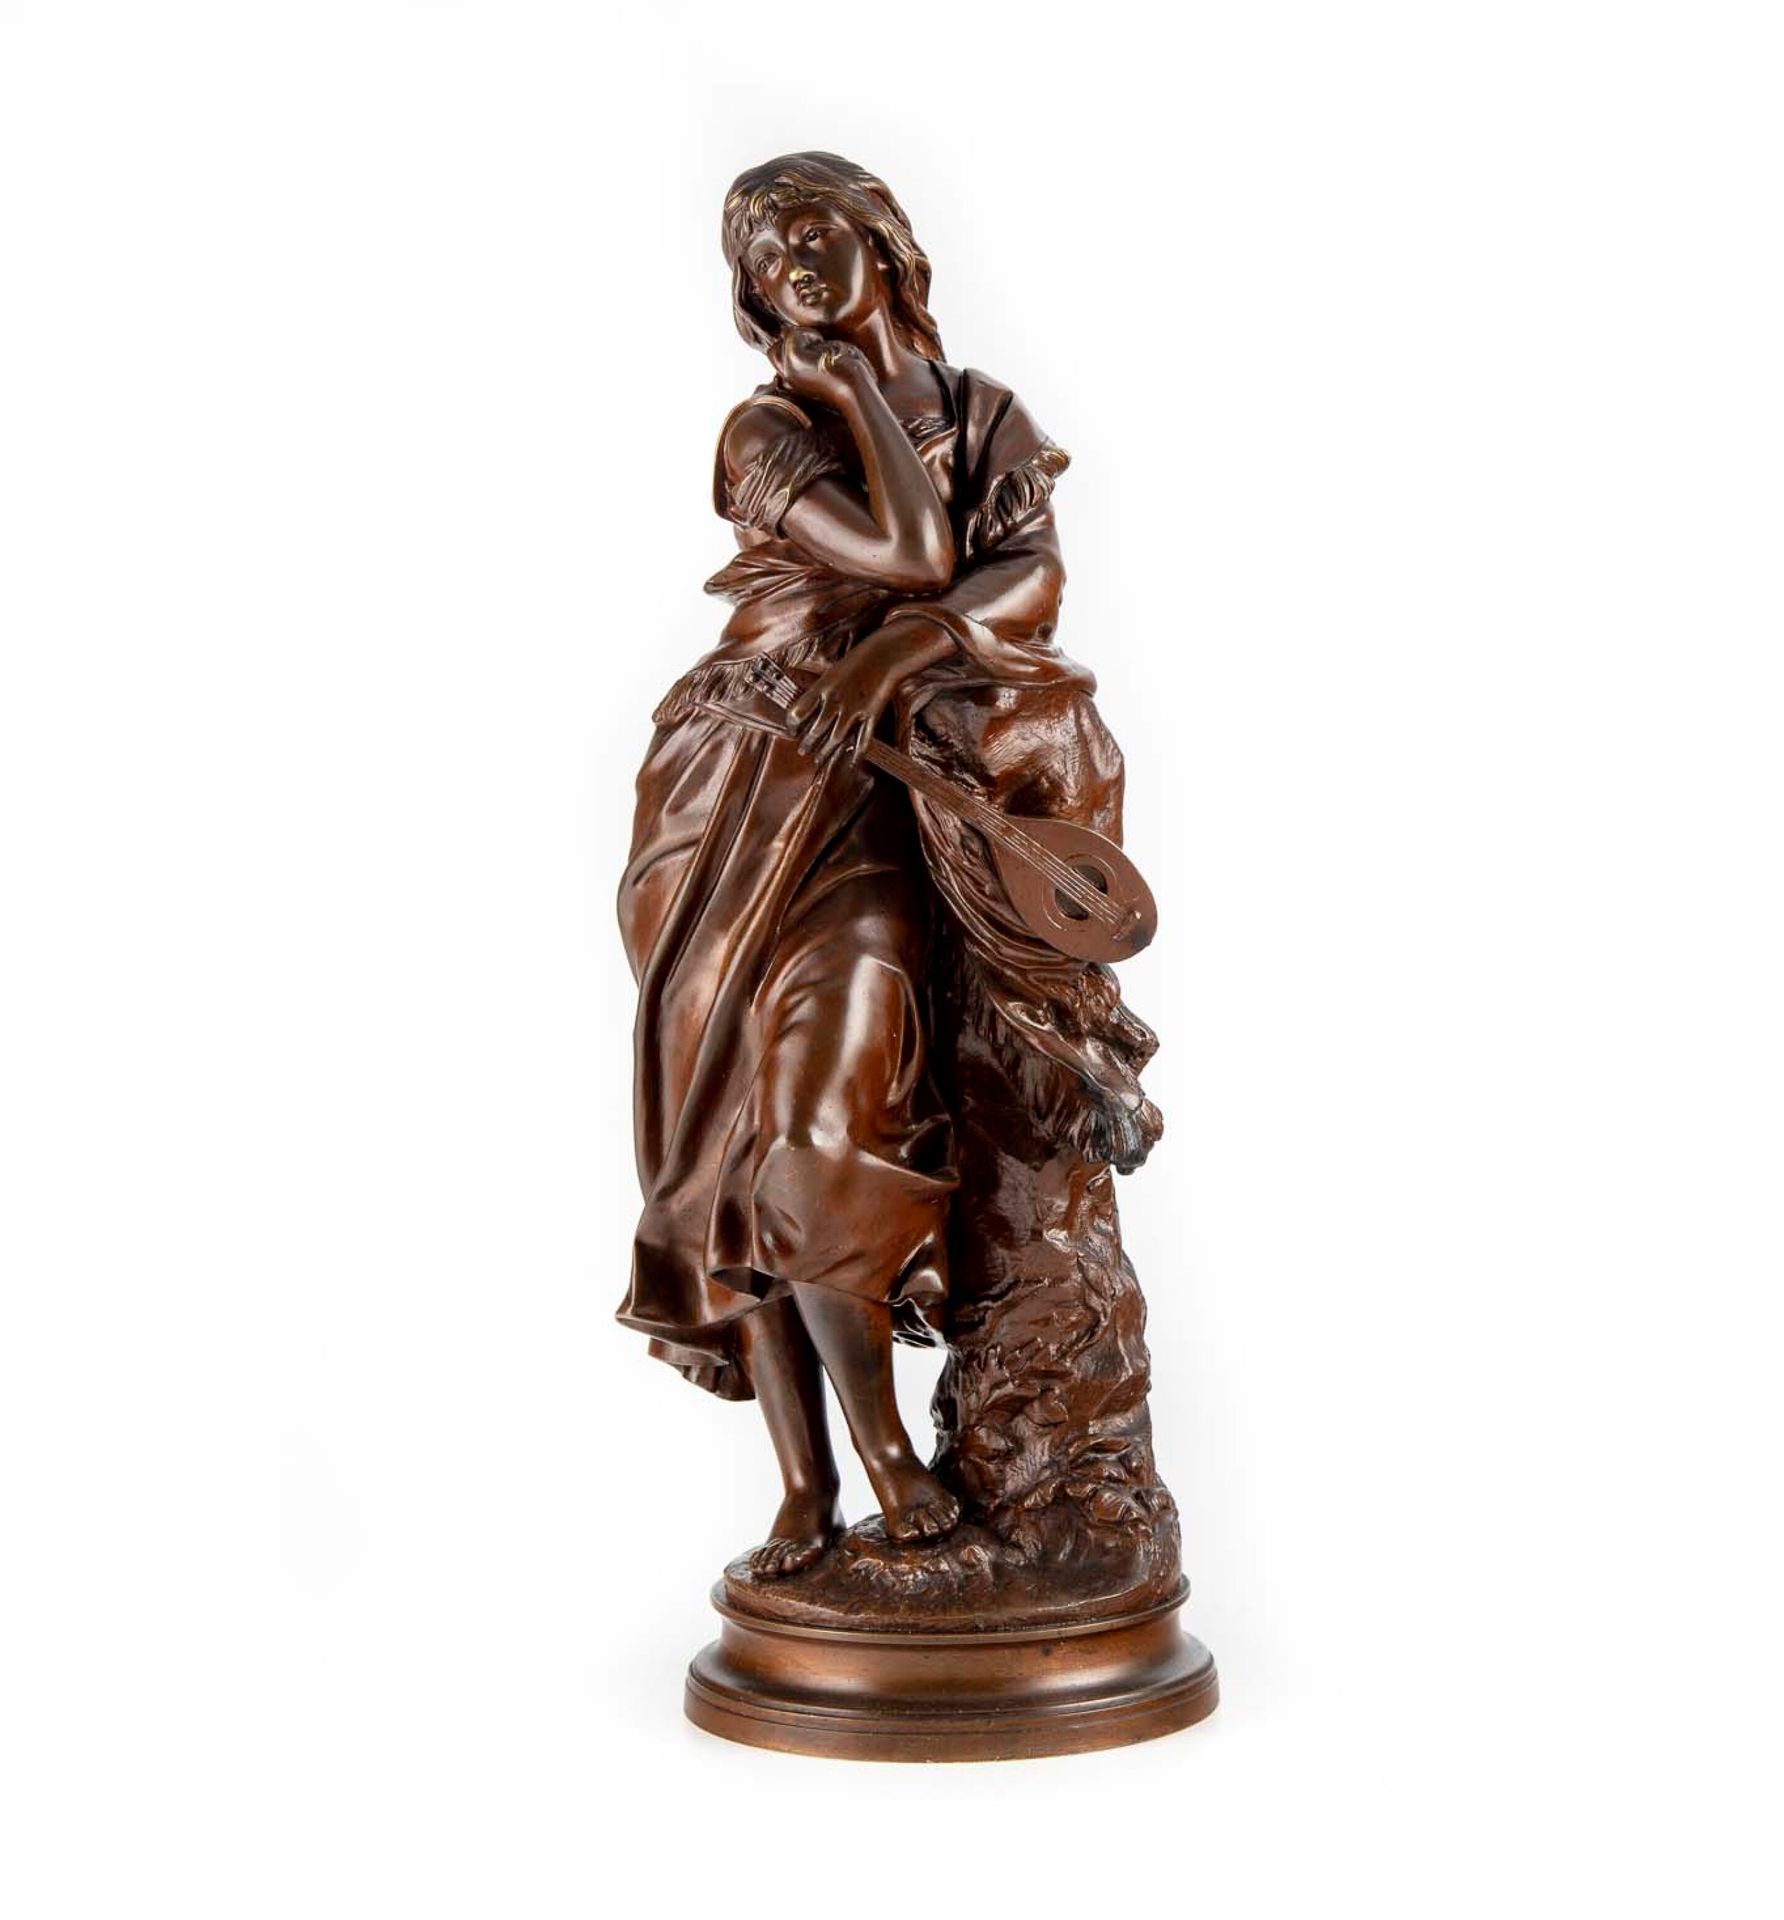 GAUDEZ Adrien Etienne GAUDEZ (1845-1902)

Mignon

Escultura de bronce patinado

&hellip;